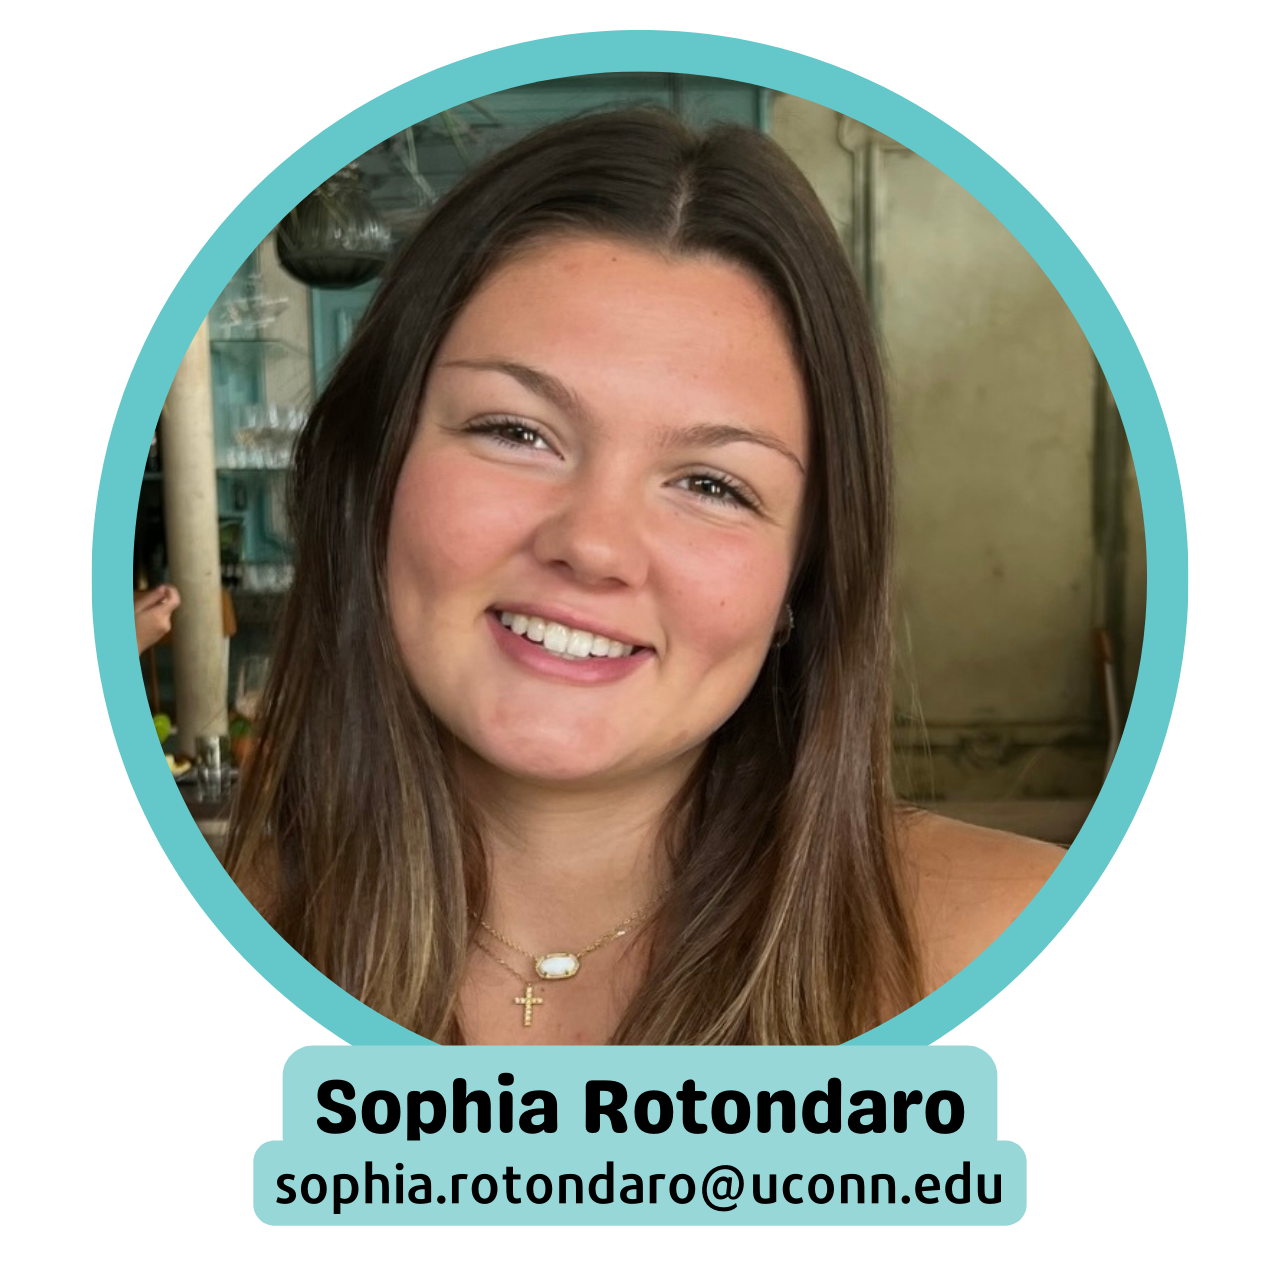 Sophia Rotondaro